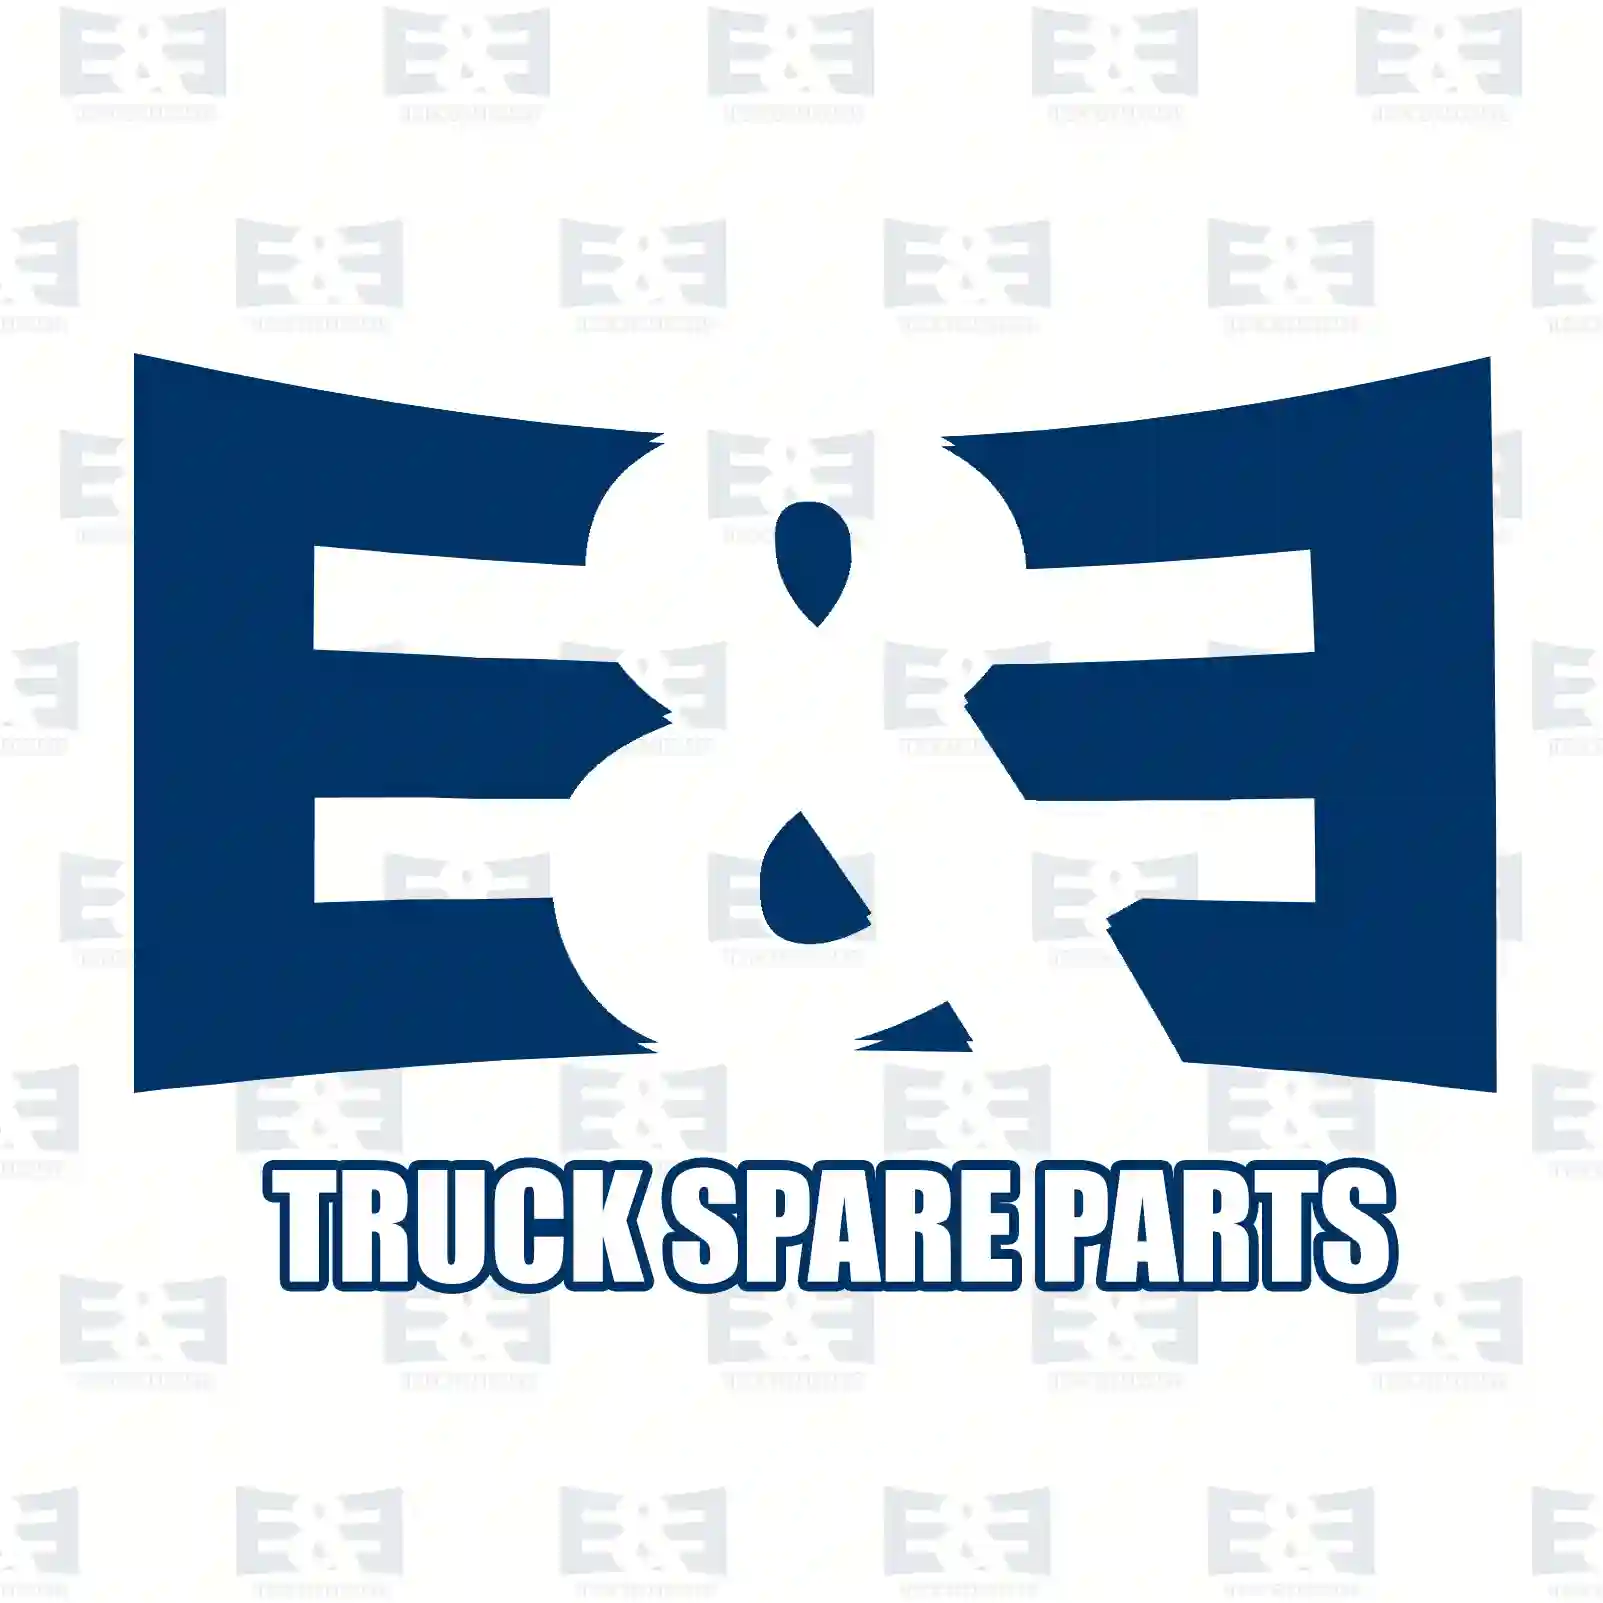 Push-in-connector, 2E2285569, ZG50584-0008, ||  2E2285569 E&E Truck Spare Parts | Truck Spare Parts, Auotomotive Spare Parts Push-in-connector, 2E2285569, ZG50584-0008, ||  2E2285569 E&E Truck Spare Parts | Truck Spare Parts, Auotomotive Spare Parts